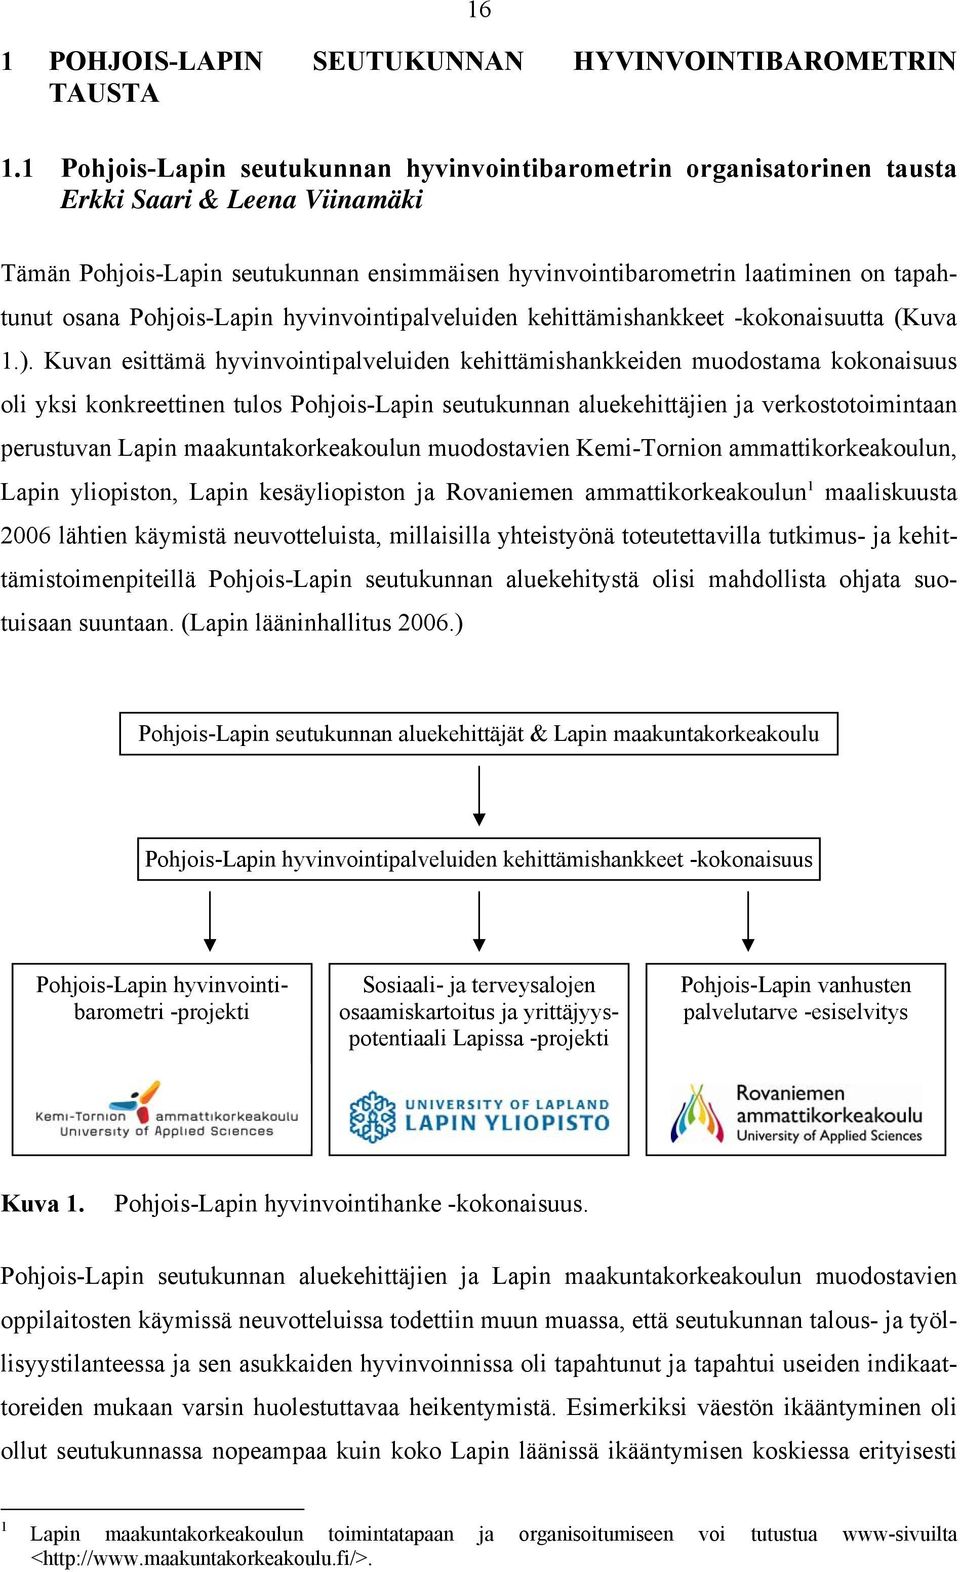 Pohjois-Lapin hyvinvointipalveluiden kehittämishankkeet -kokonaisuutta (Kuva 1.).